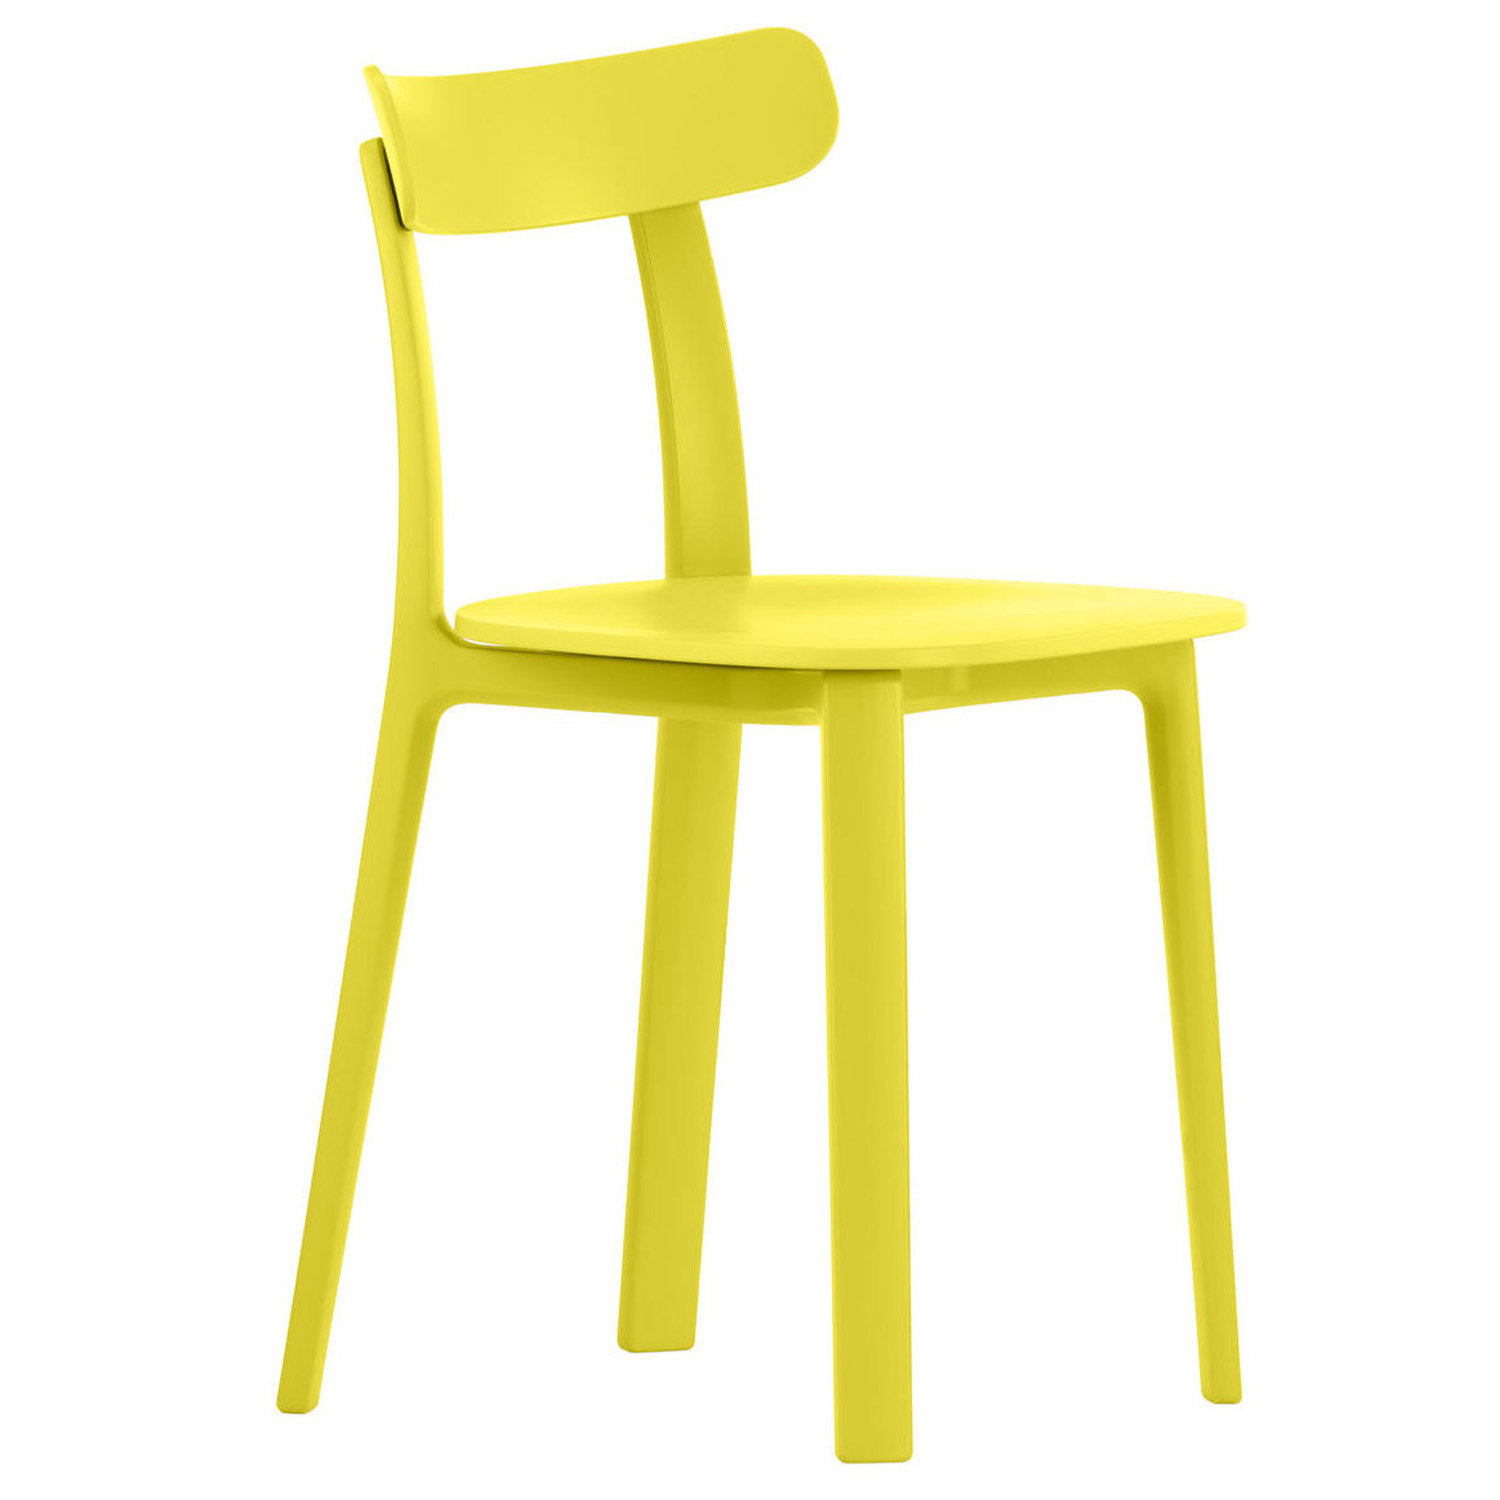 Vitra designové židle All Plastic Chair